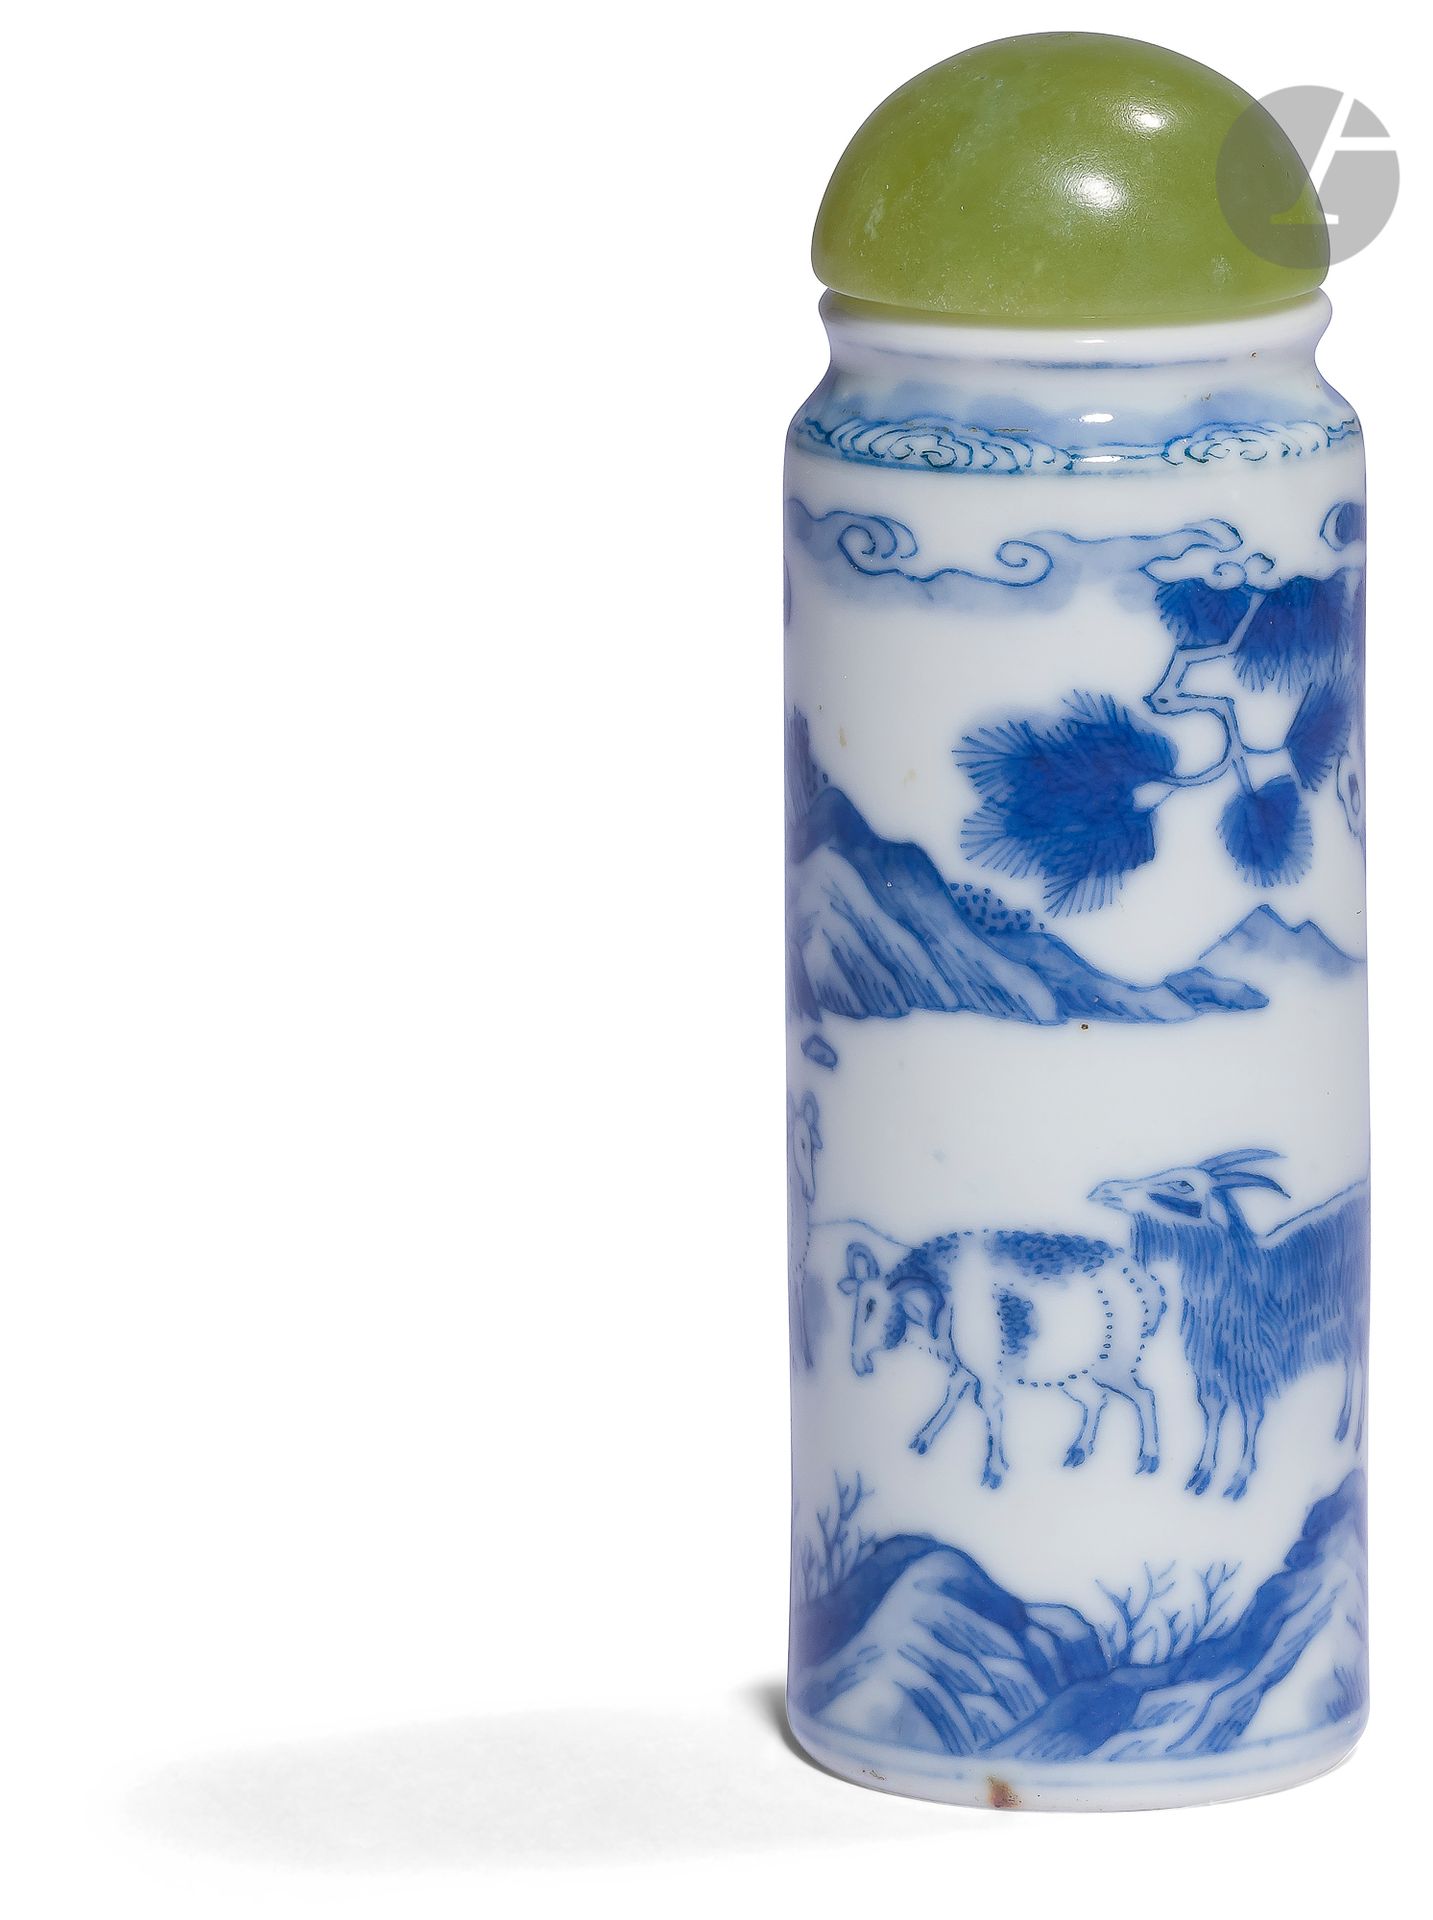 Null 青花瓷鼻烟壶，中国，19
世纪白瓷圆柱形瓶，釉下青花，连续的装饰显示了太阳下的三只公羊和山林中松树下的一个人物。三羊开泰 "的组合是一个与春天和中国新&hellip;